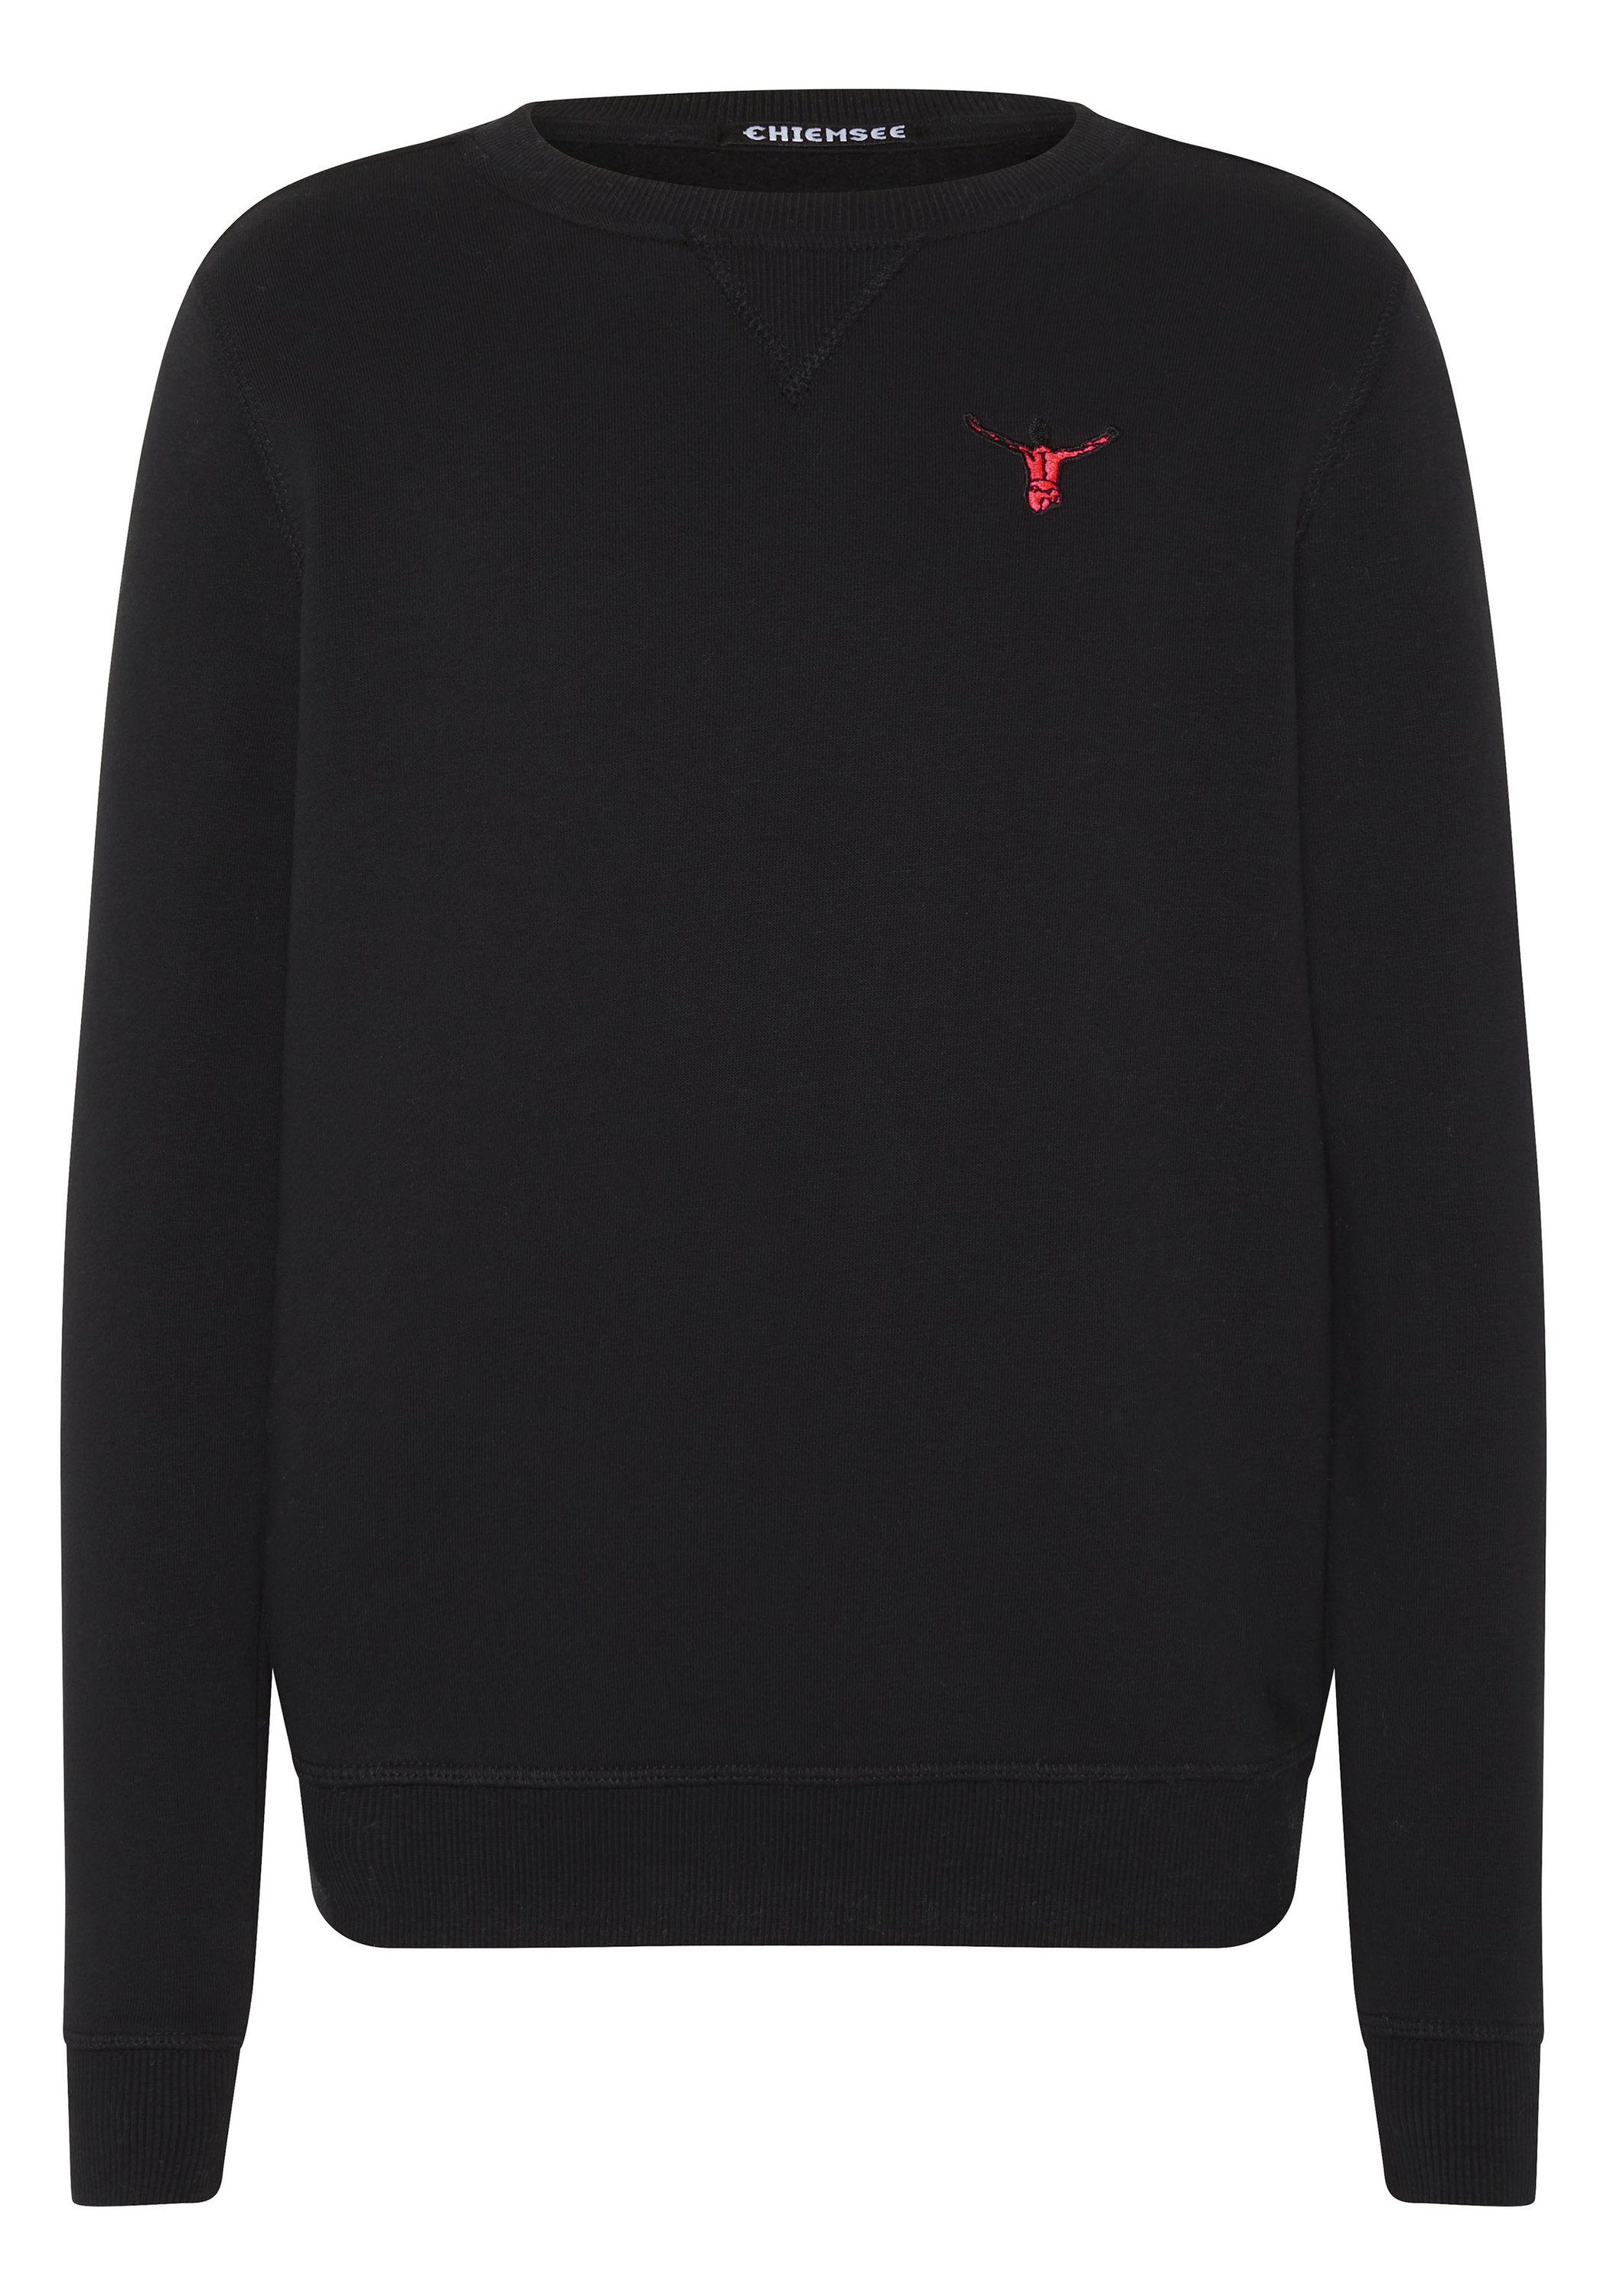 Chiemsee Sweatshirt Sweater mit Label-Motiven 1